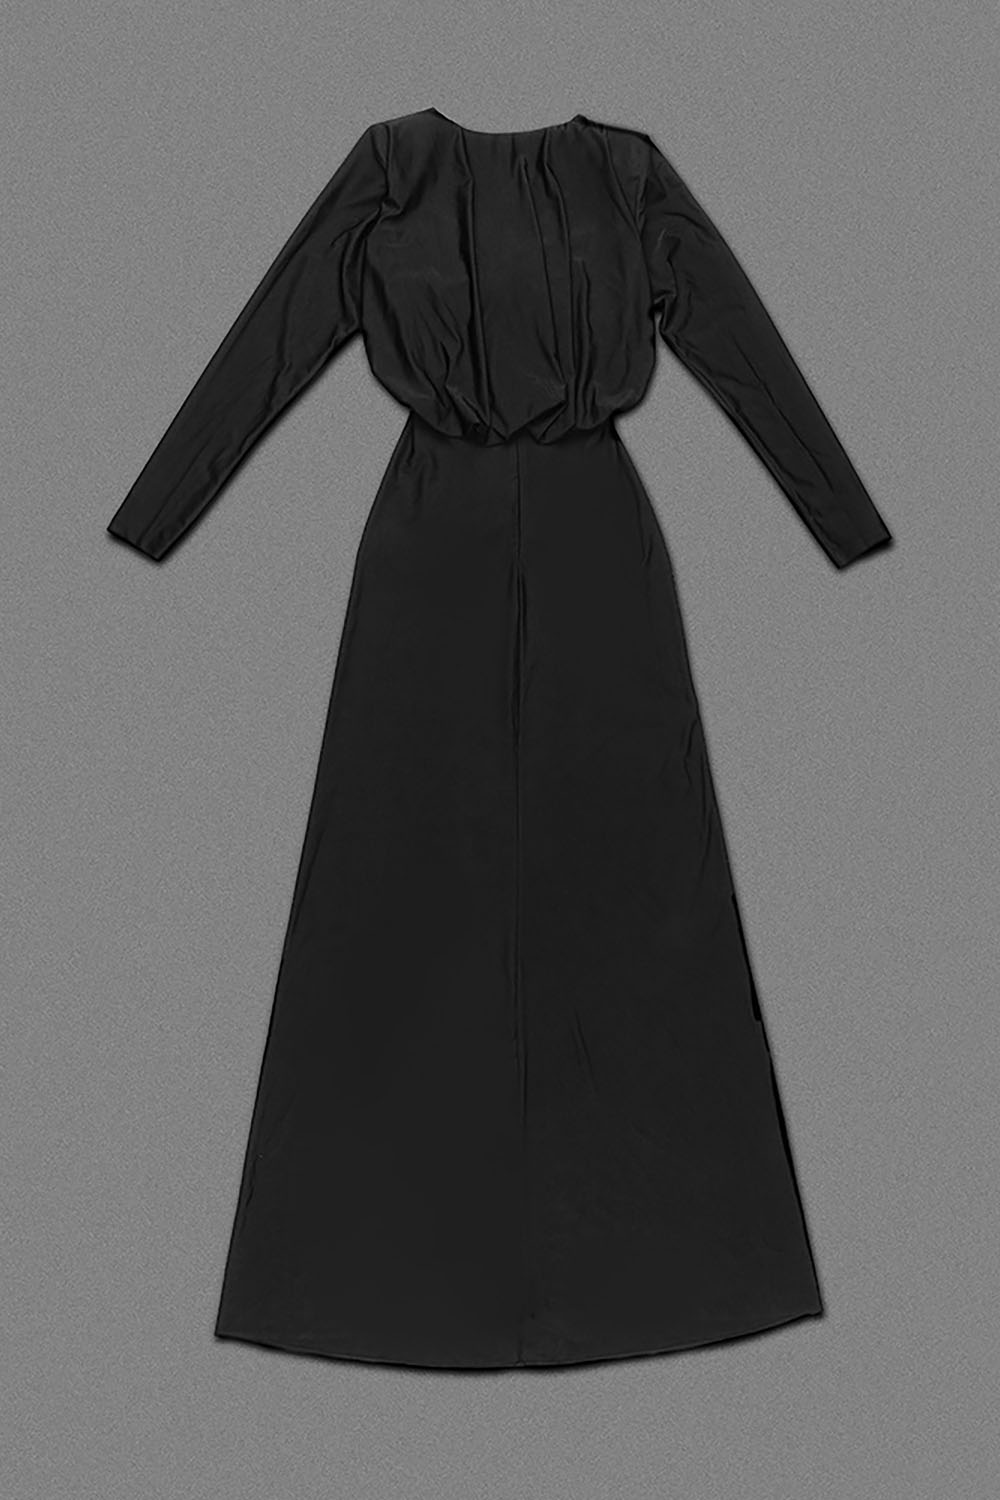 Robe froncée découpée en jersey noir